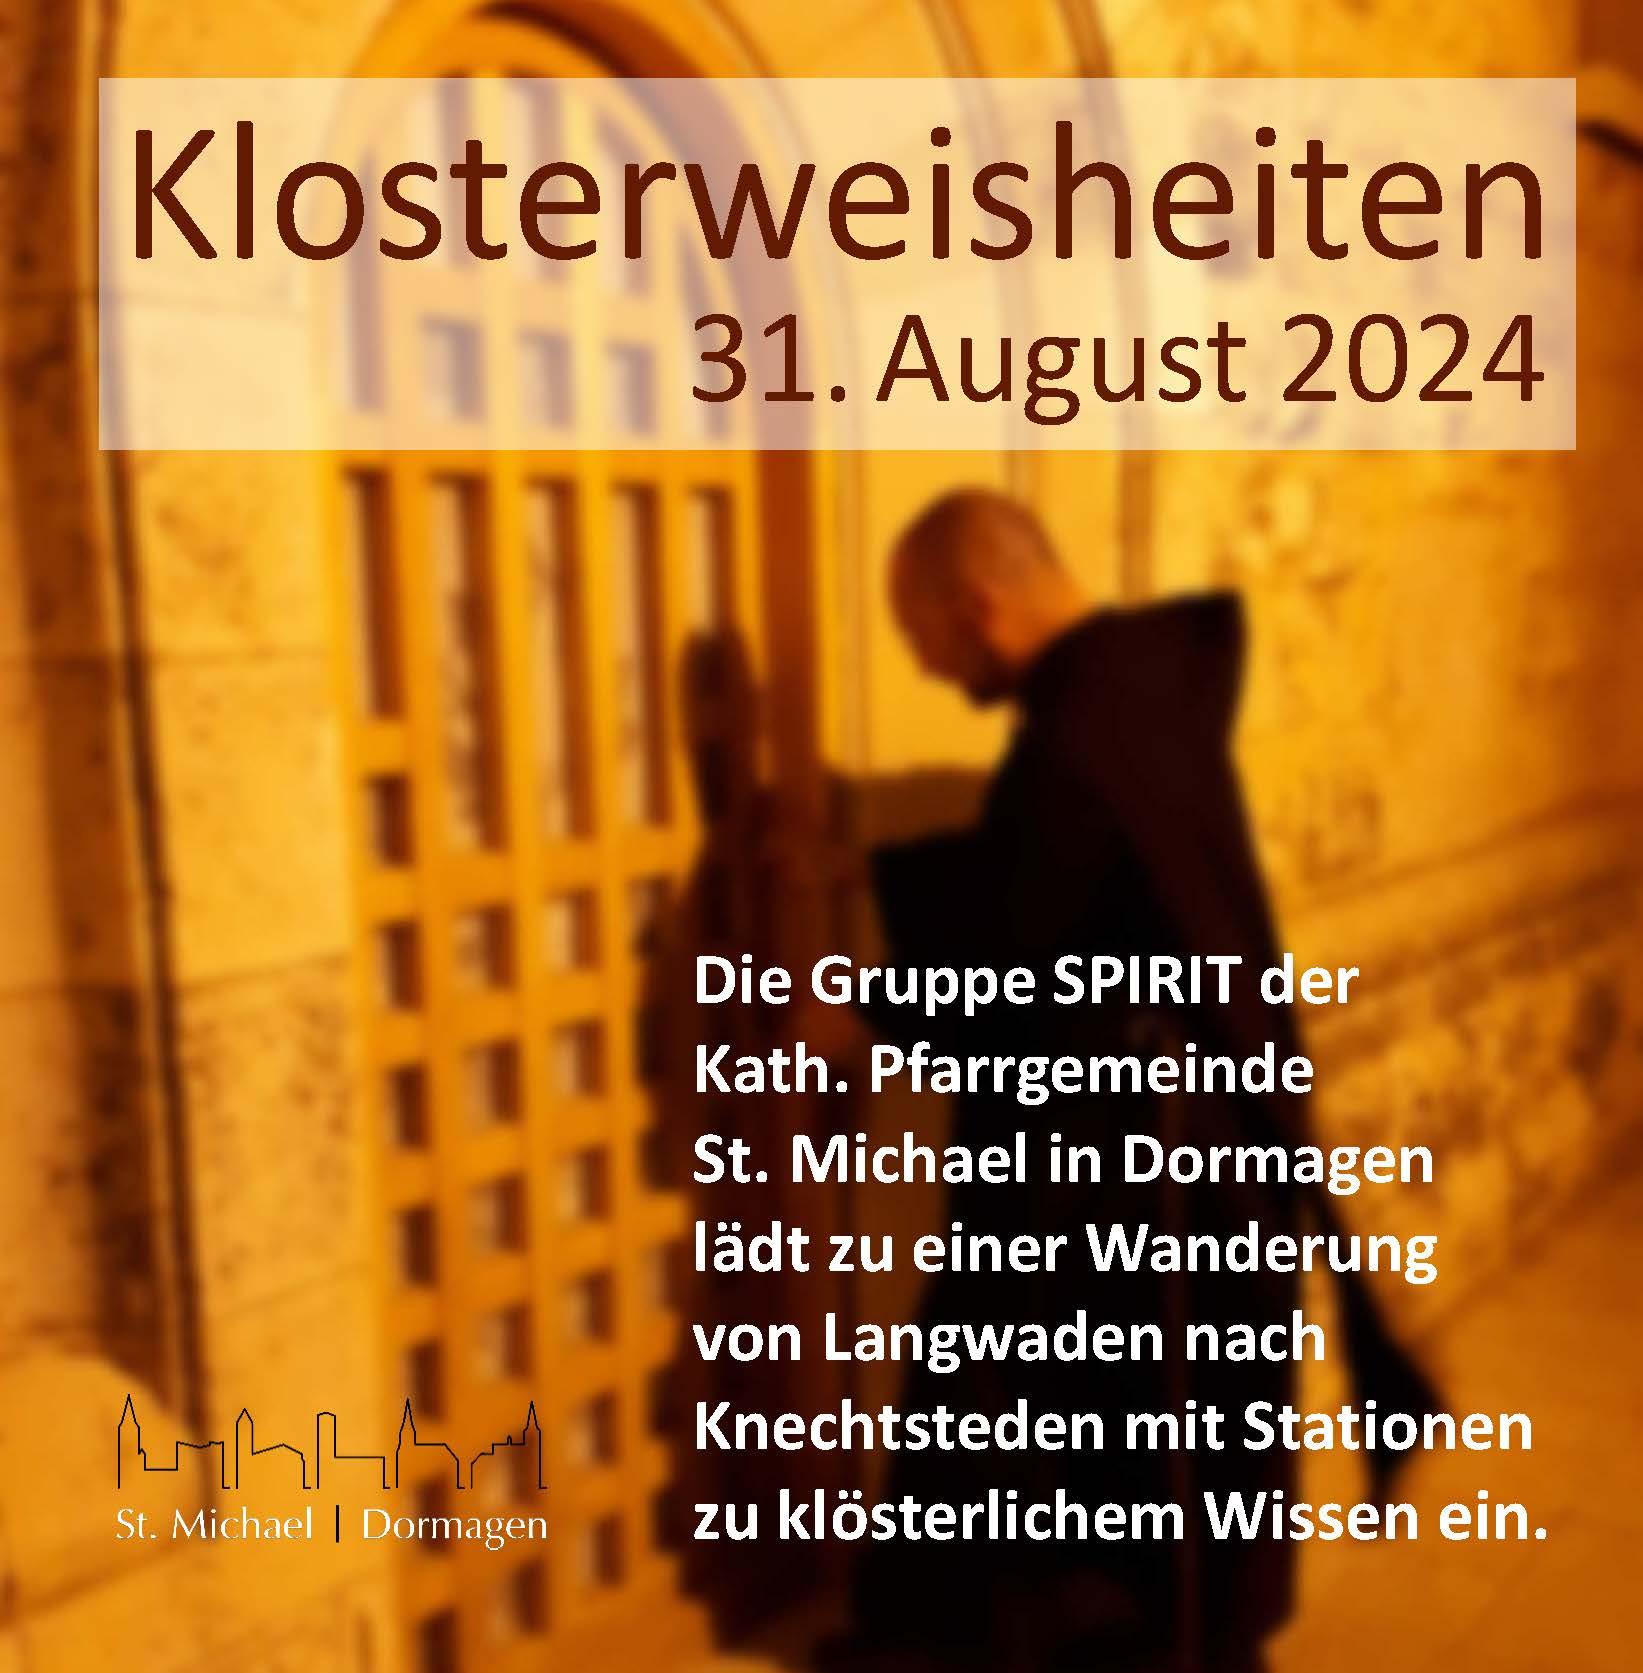 Klosterweisheiten - Spirituelle Wanderung am 31.08.2024